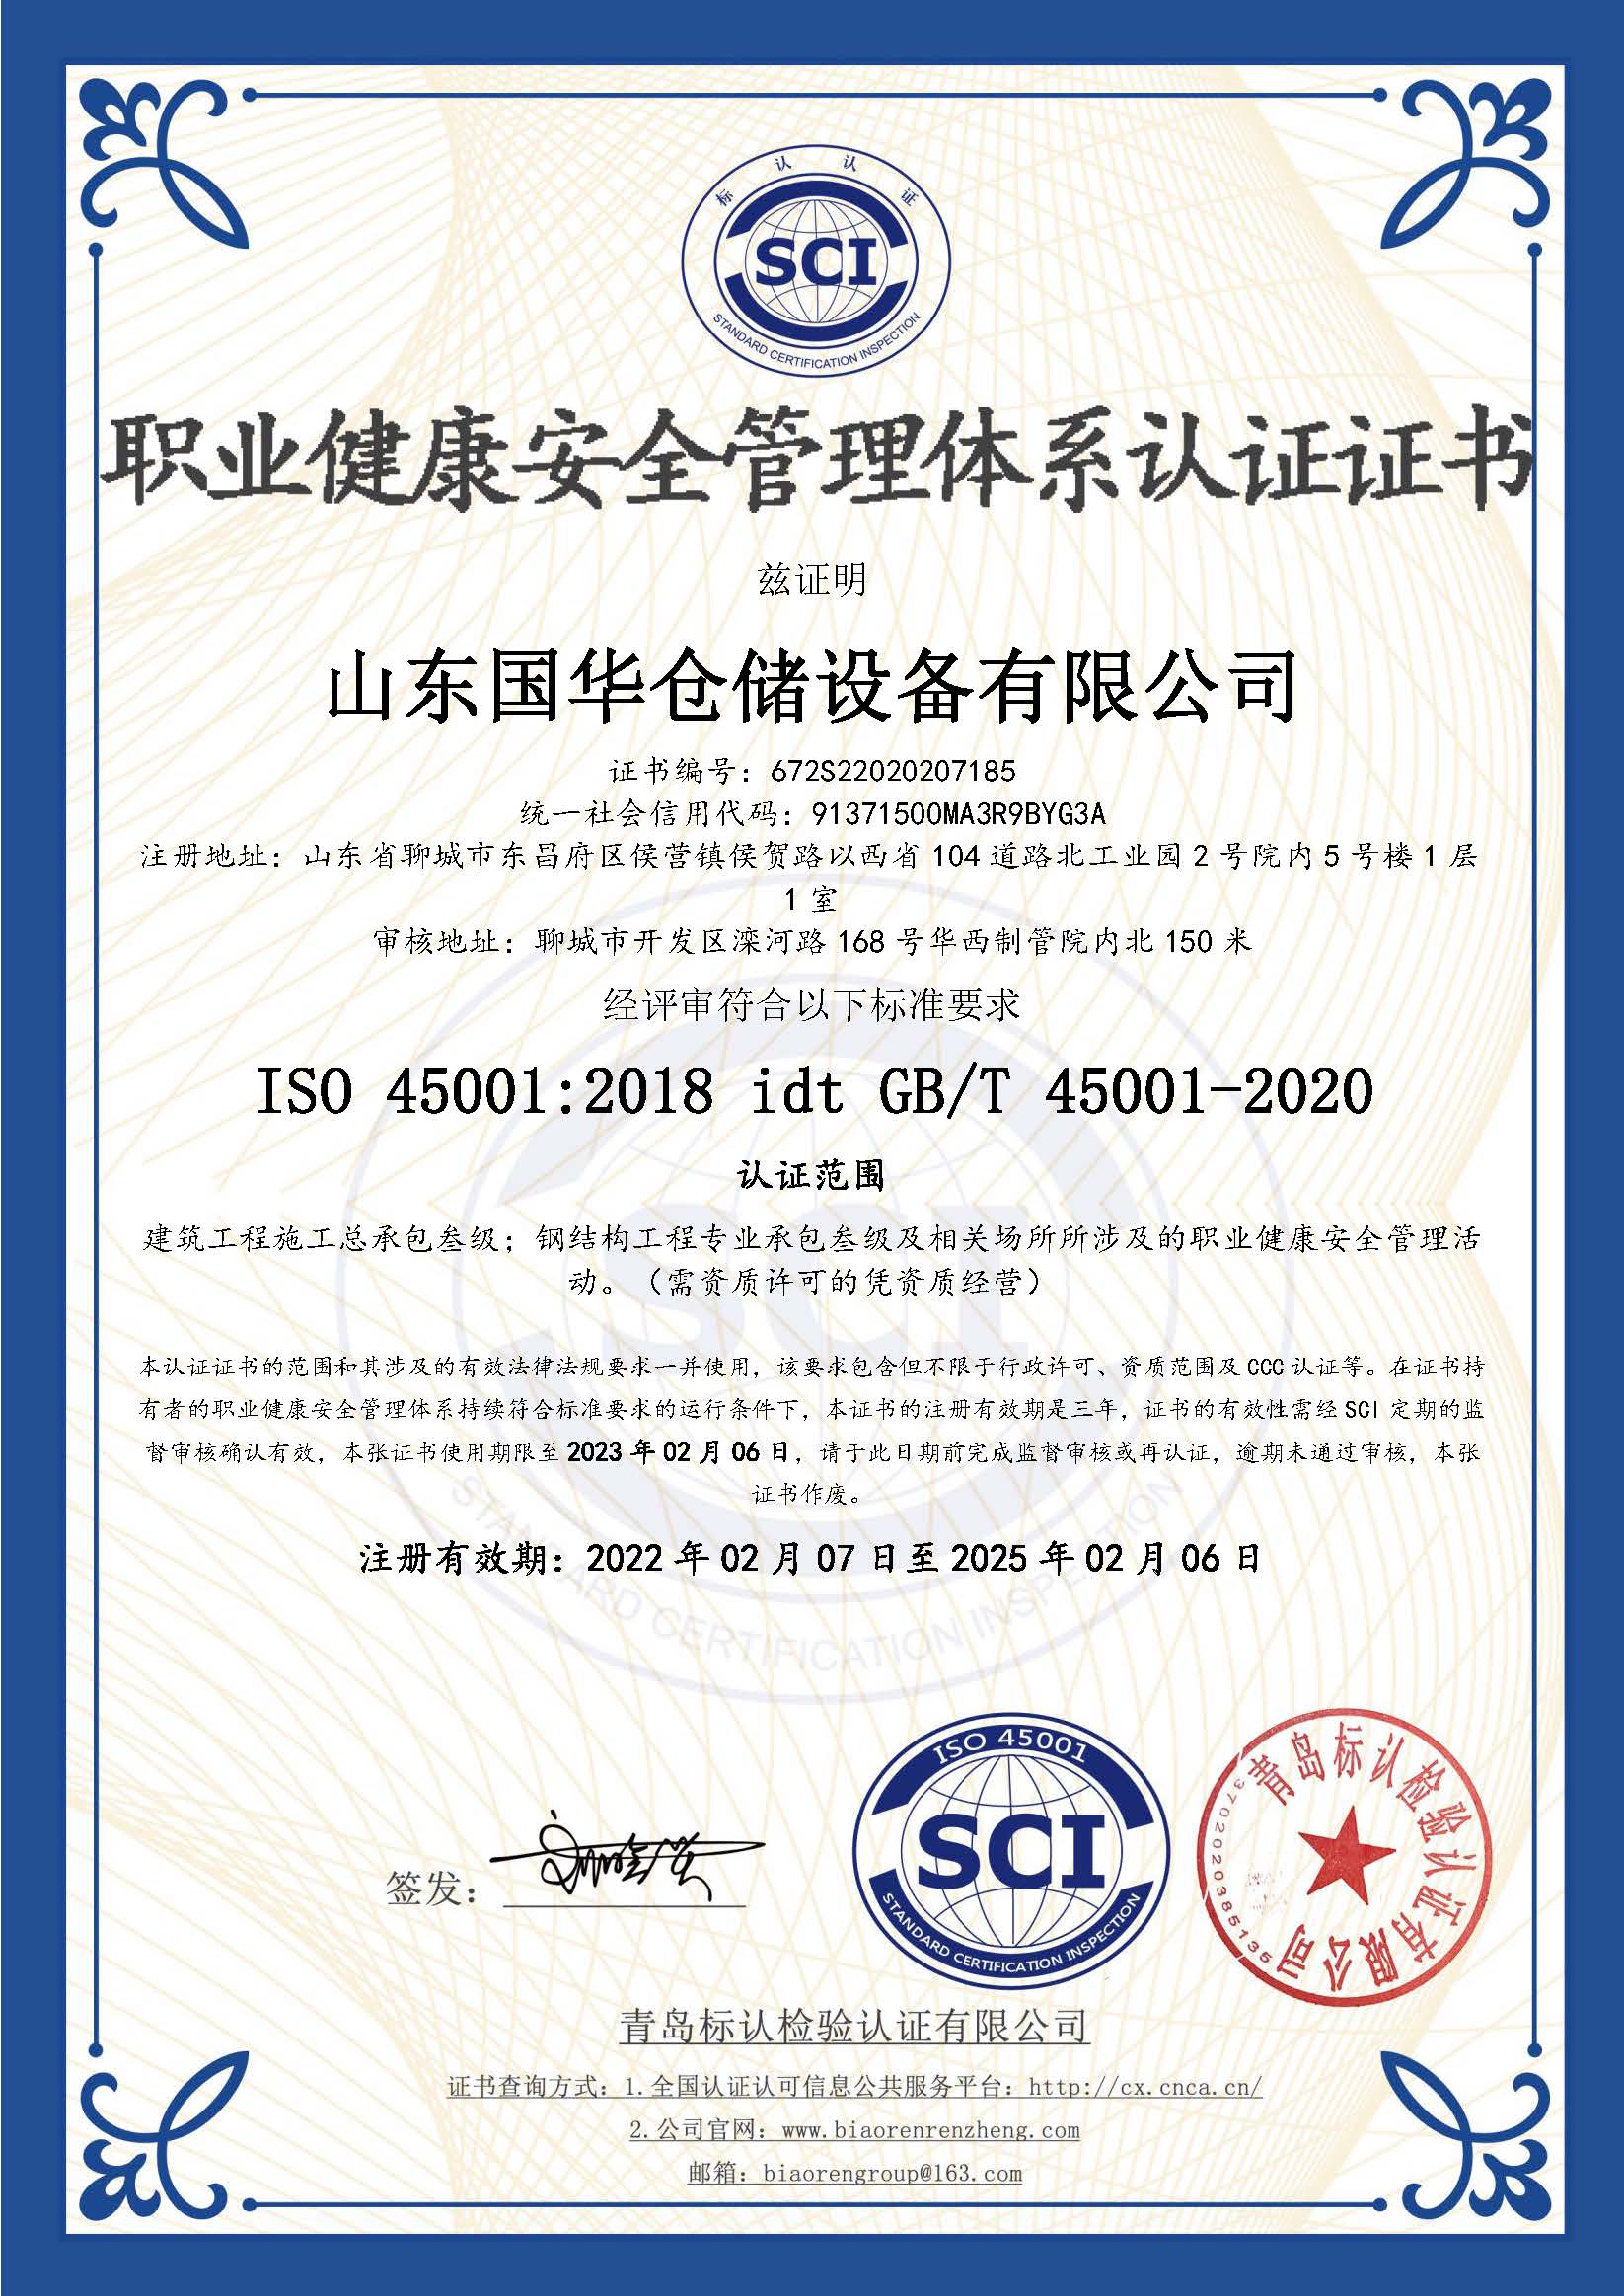 杭州钢板仓职业健康安全管理体系认证证书